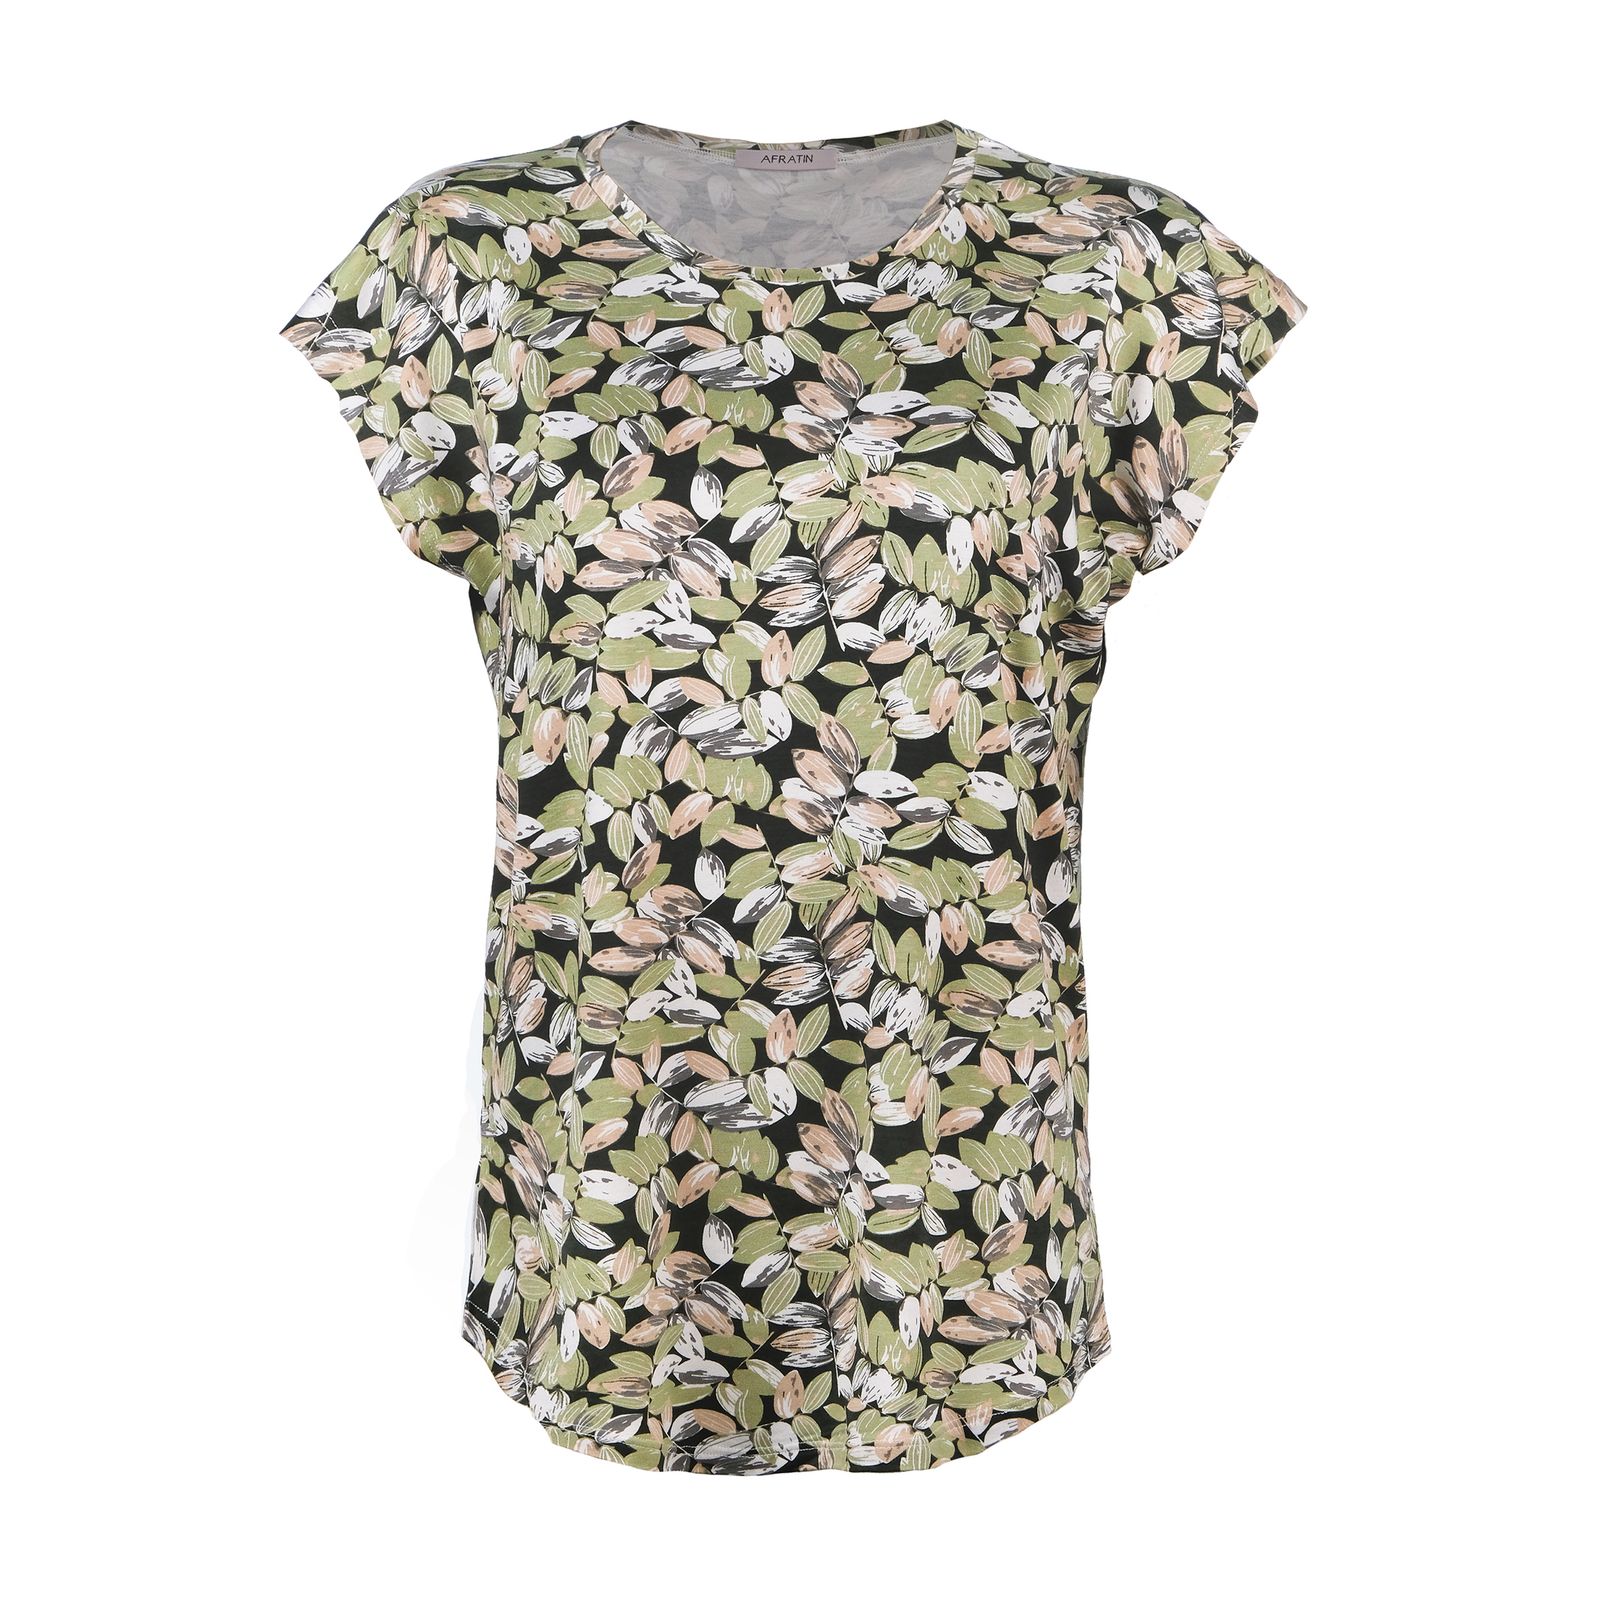 تی شرت آستین کوتاه زنانه افراتین مدل برگ کد 2579 رنگ سبز -  - 1